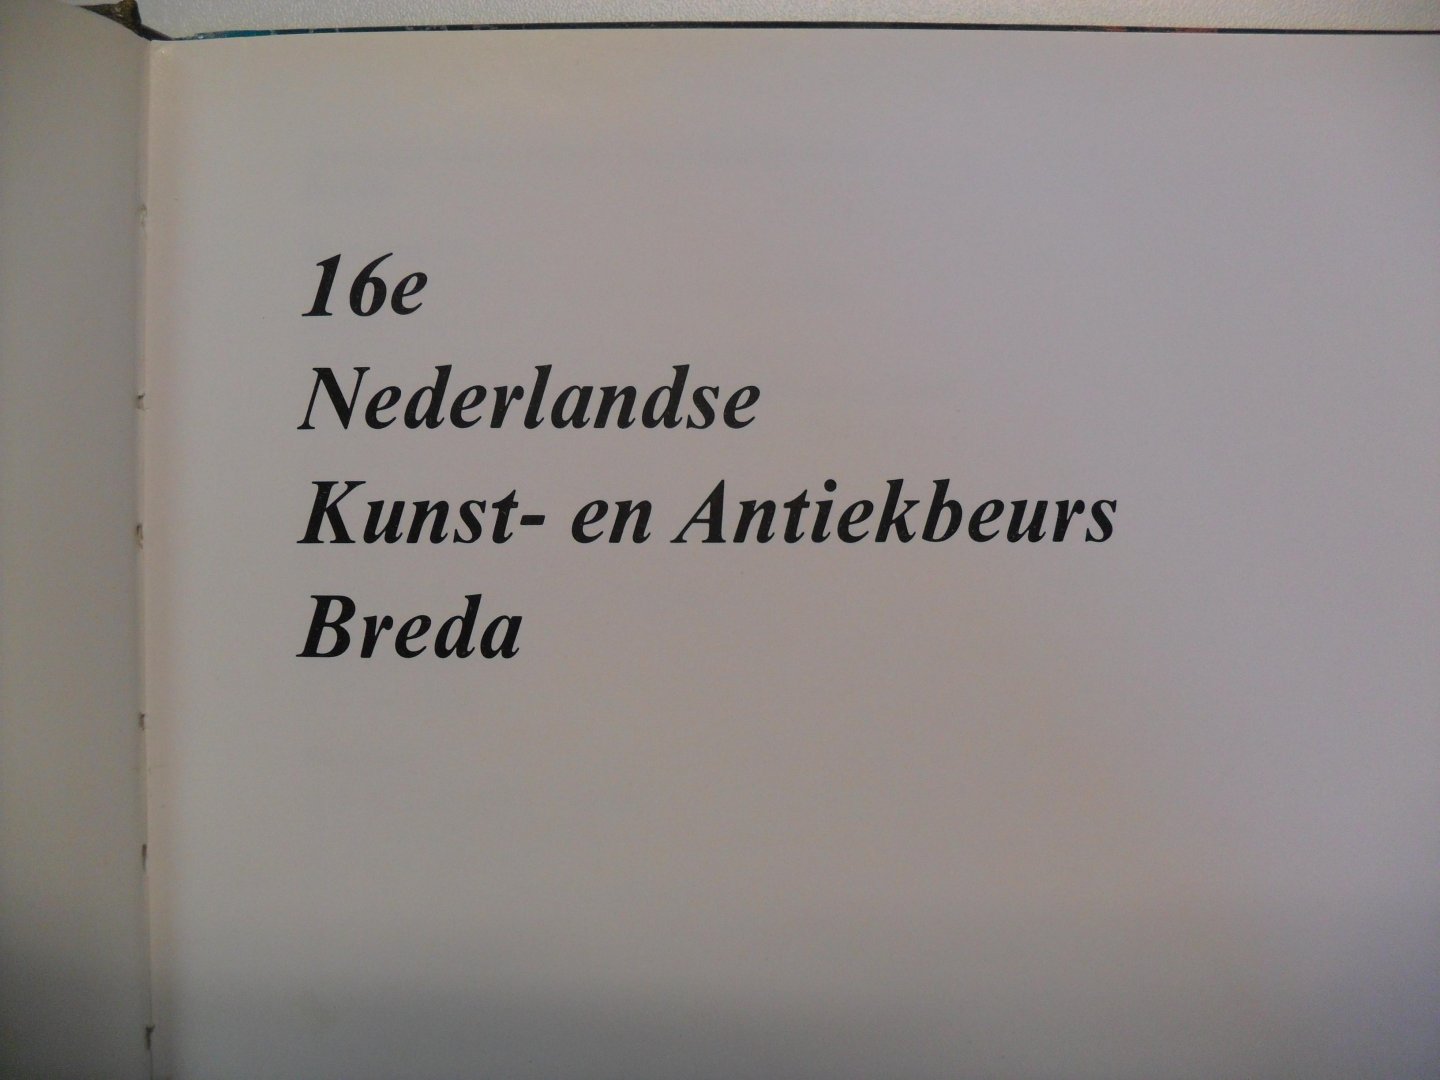 nn - 16e Nederlandse Kunst- en Antiekbeurs Breda